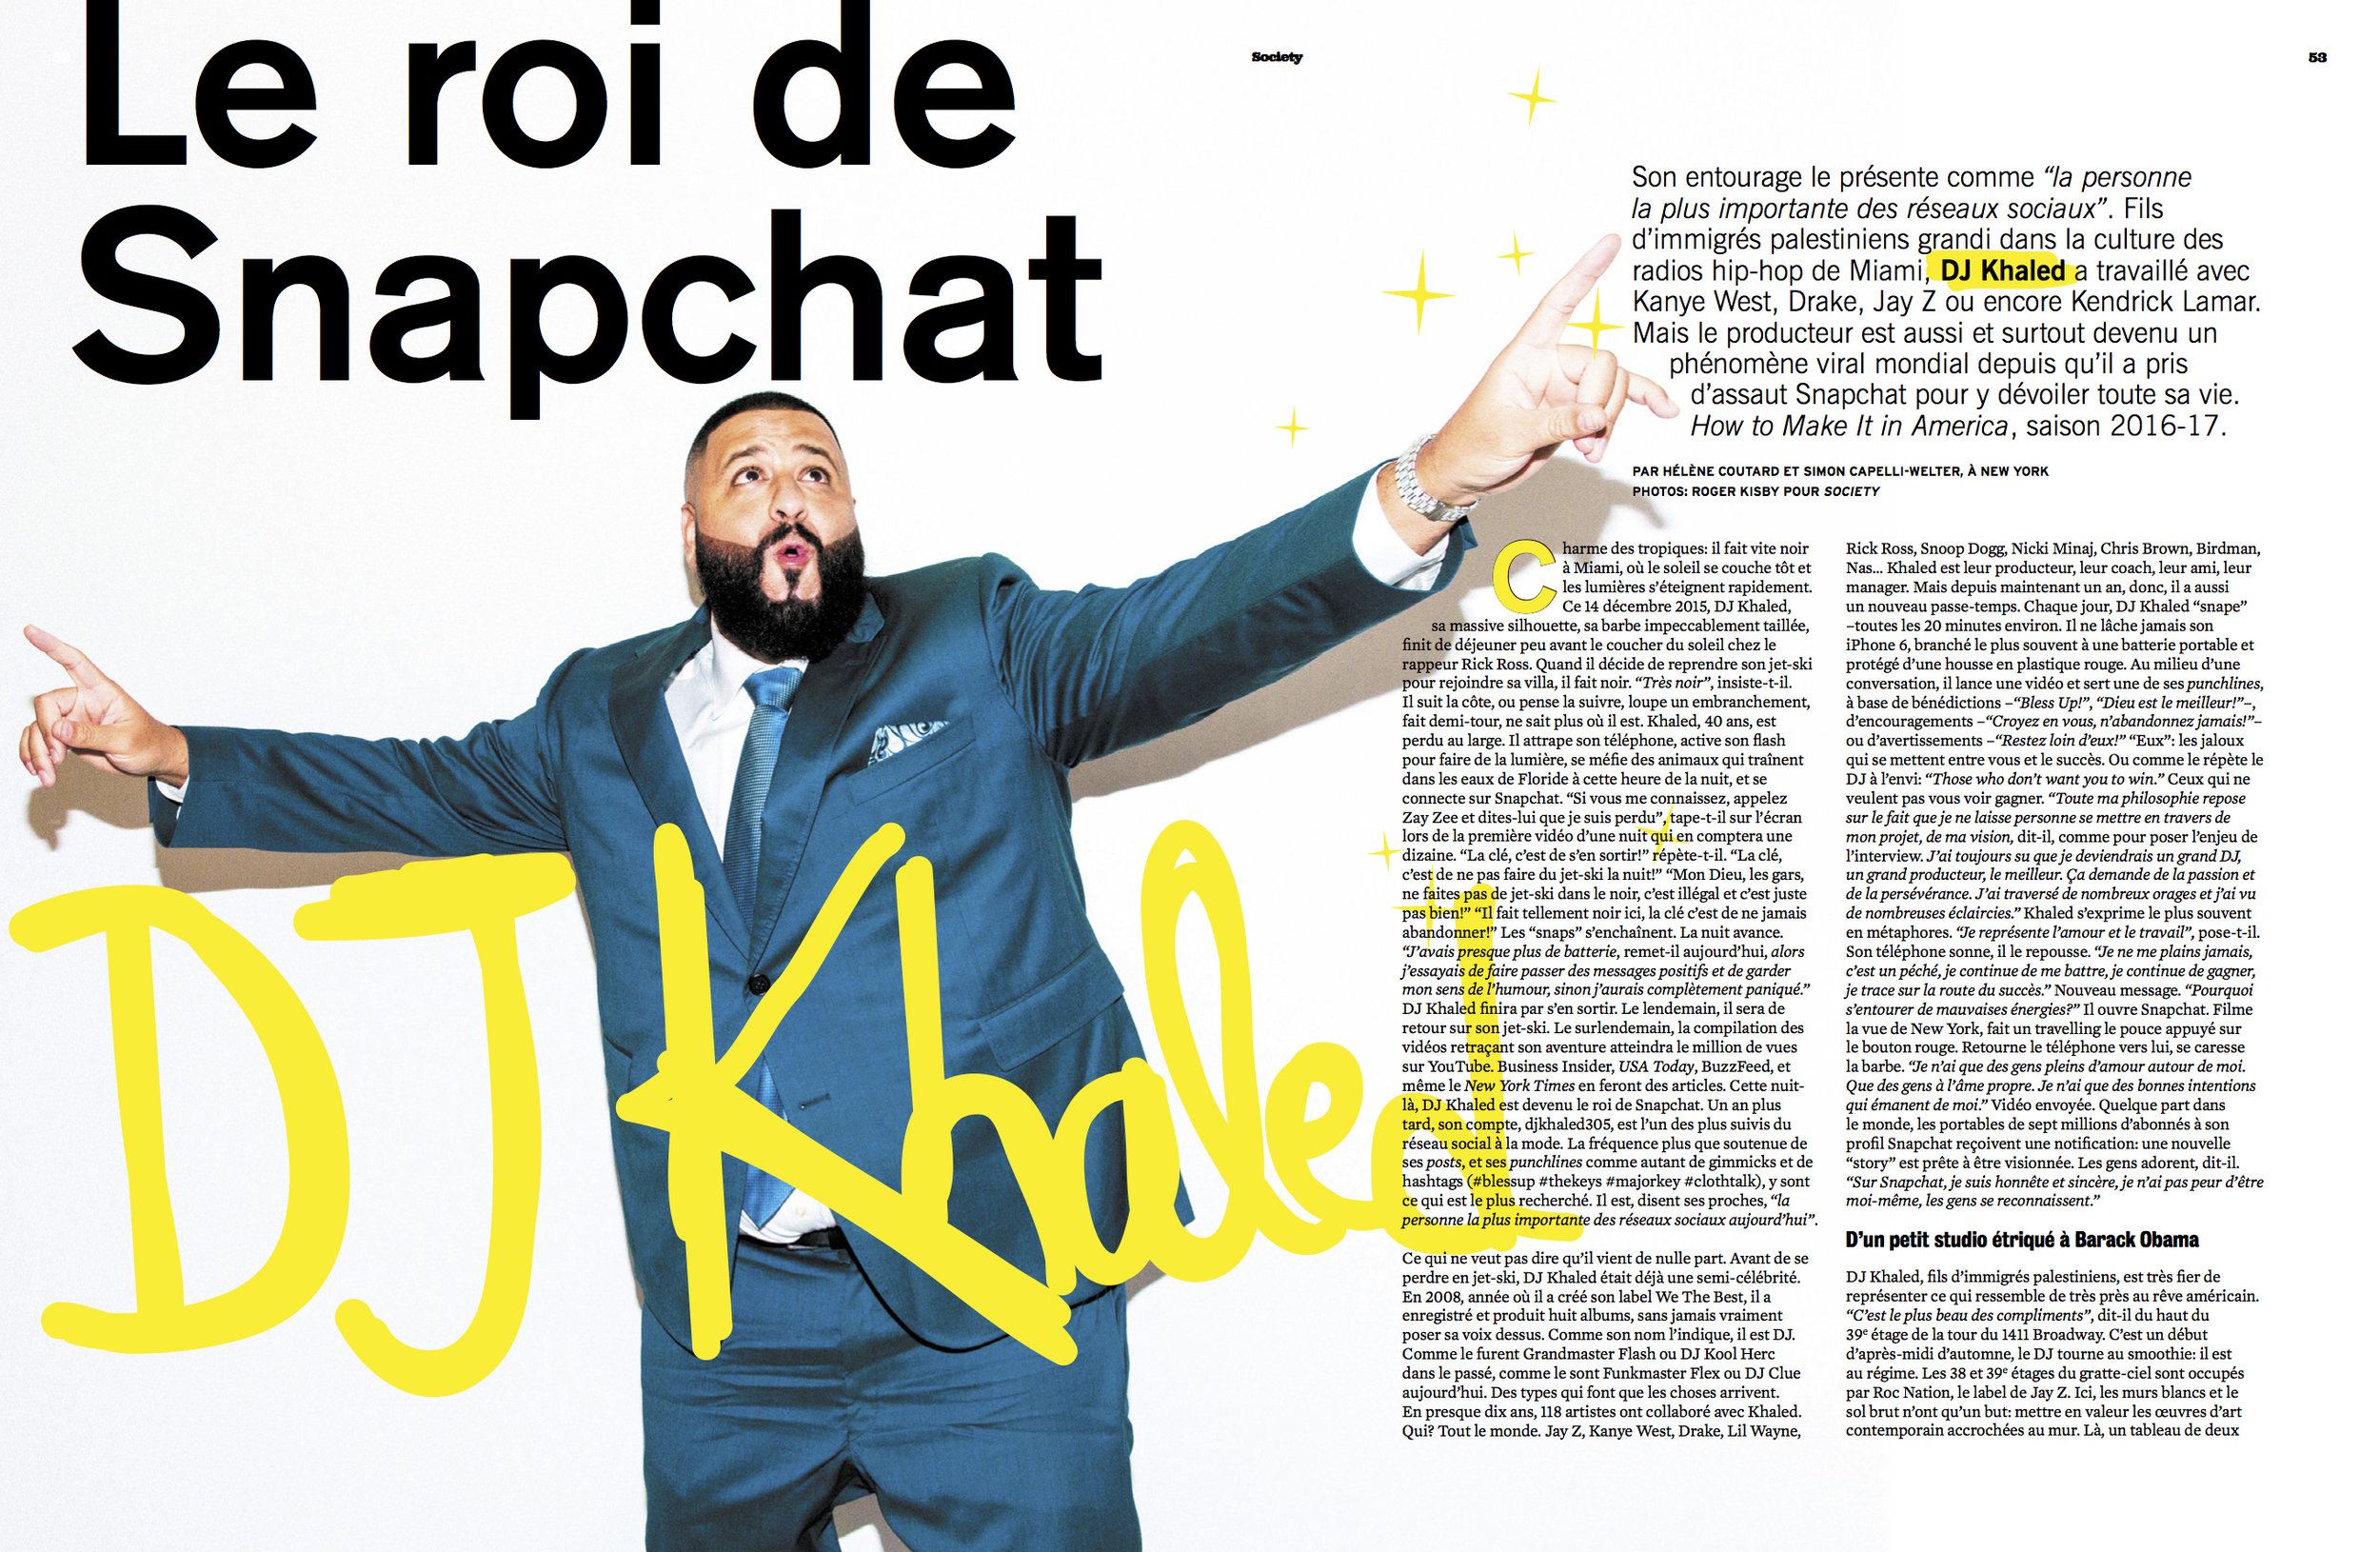  DJ Khaled for Society Magazine 